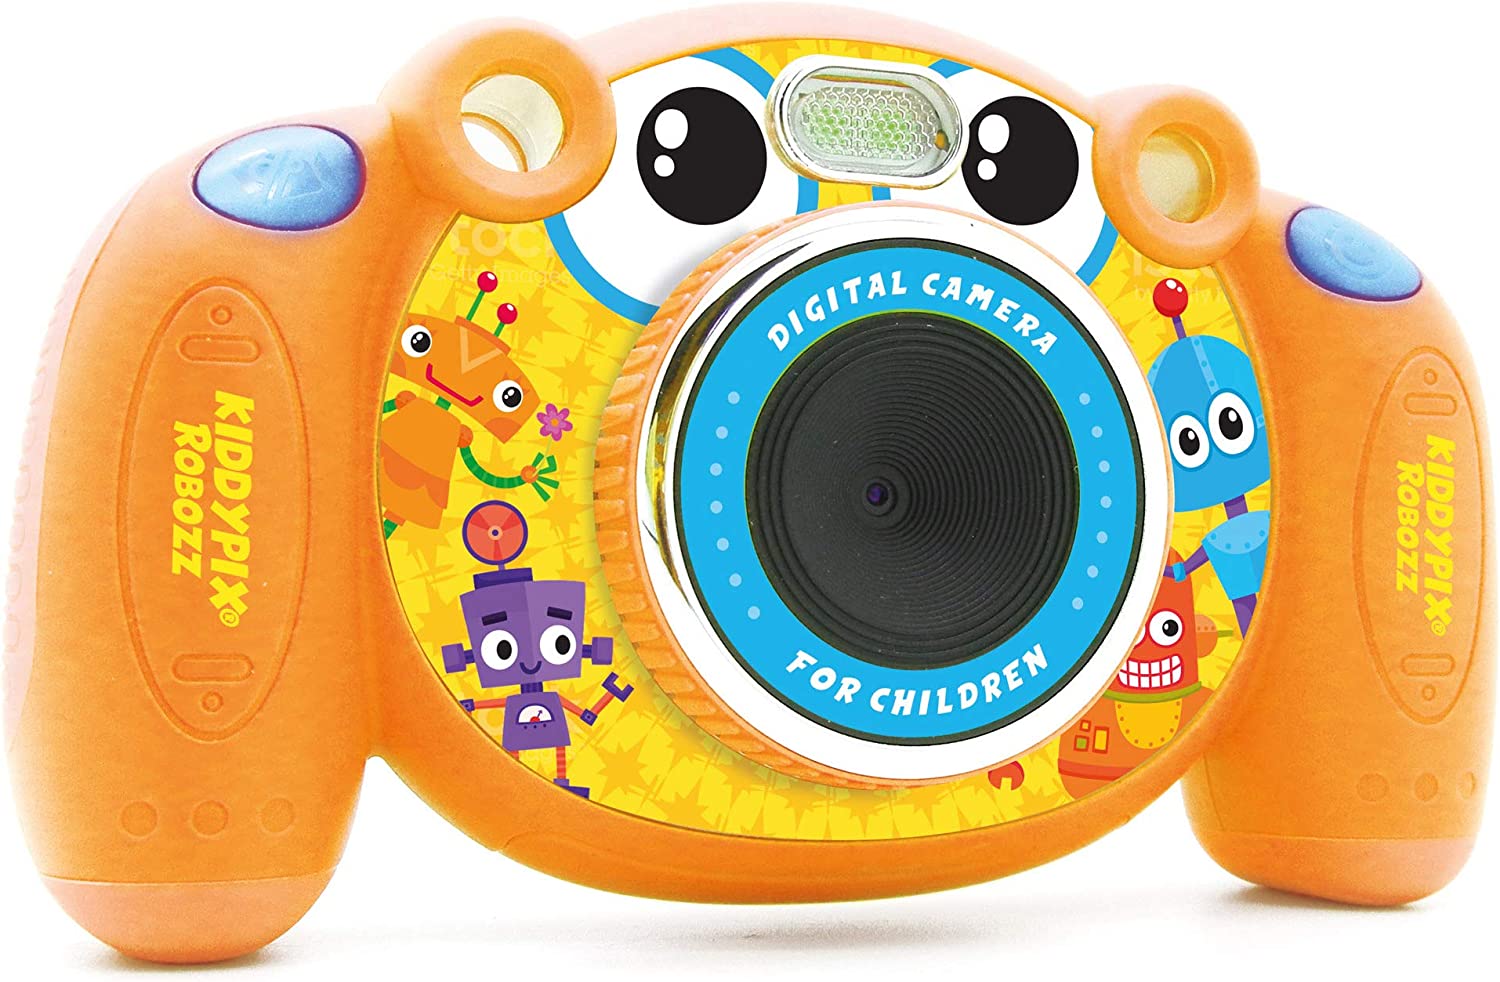 Easypix Kiddypix Robozz Kinderkamera mit Fotorahmen, mit Spielen, bis zu 5 MP Auflösung, 5 cm (2 Zoll) Display, Orange, 10092